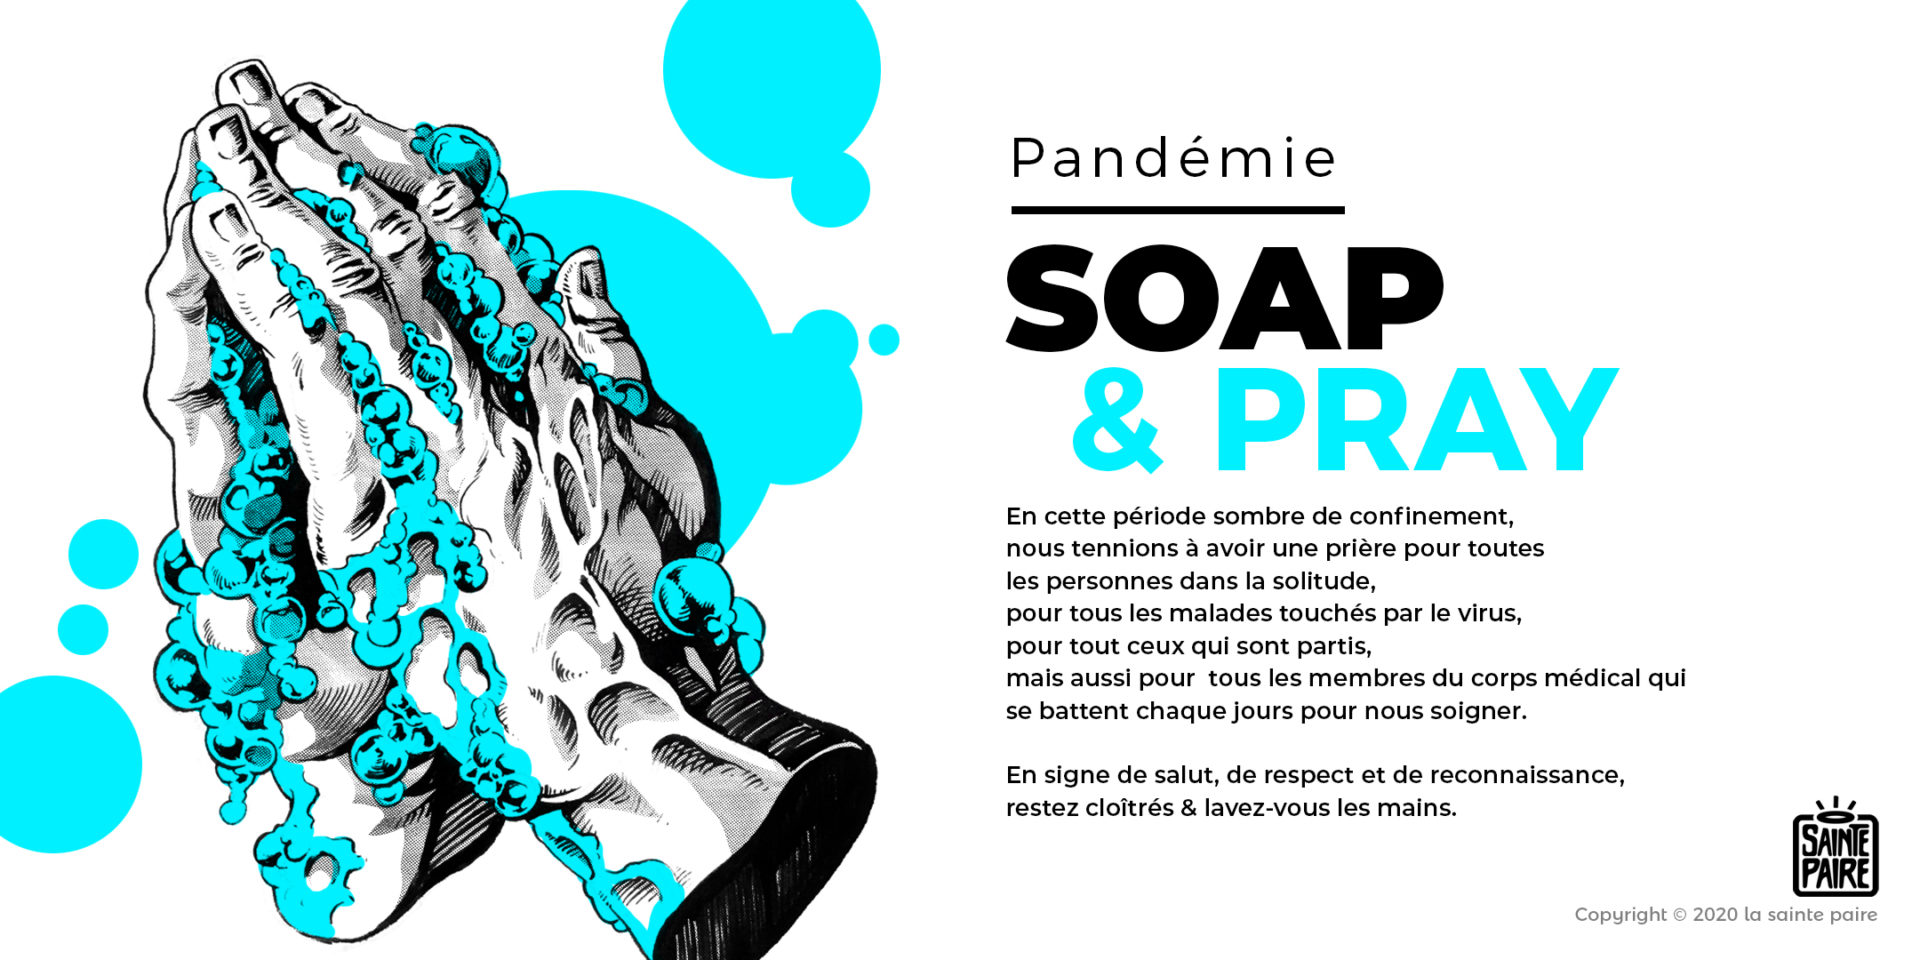 SOAP AND PRAY-La sainte paire x nooga nicolas agenal